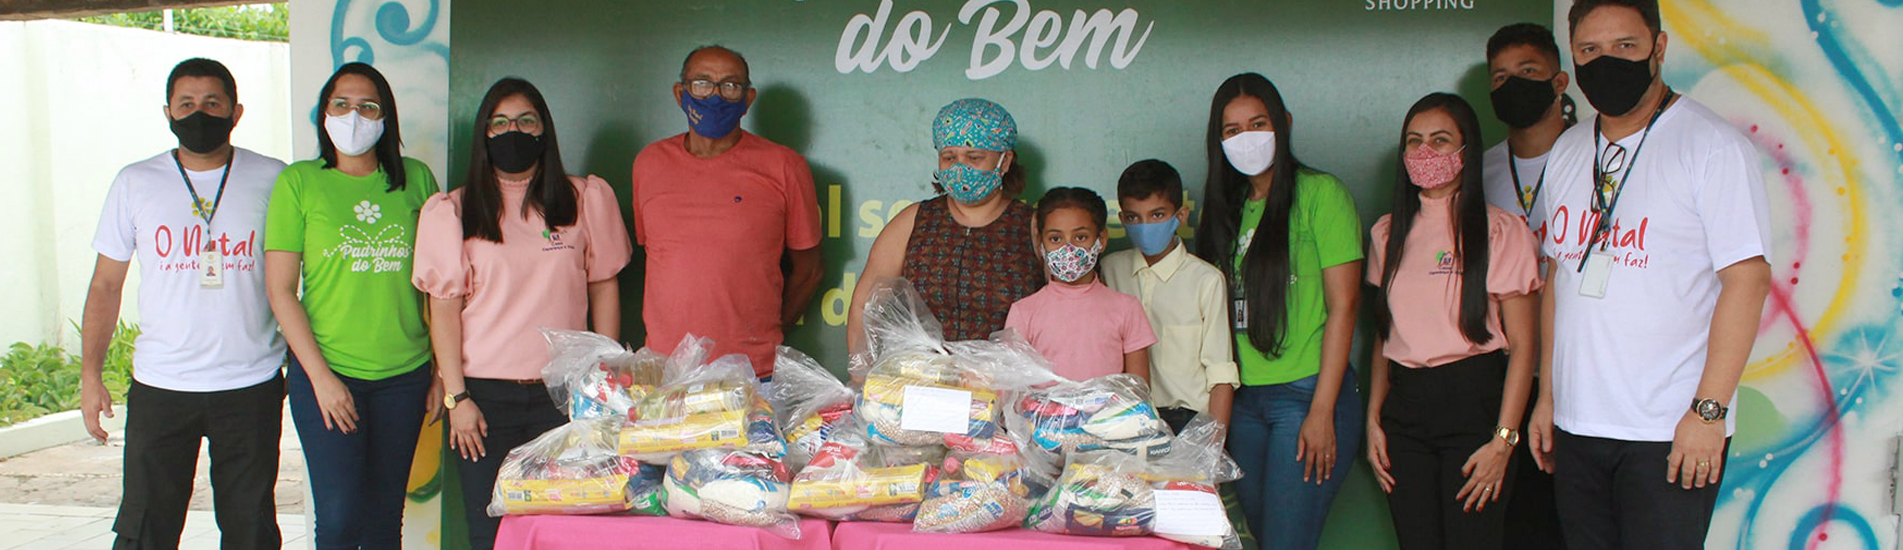 Teresina Shopping finaliza Campanha Padrinhos do Bem com mais de 4 toneladas de alimentos doados.